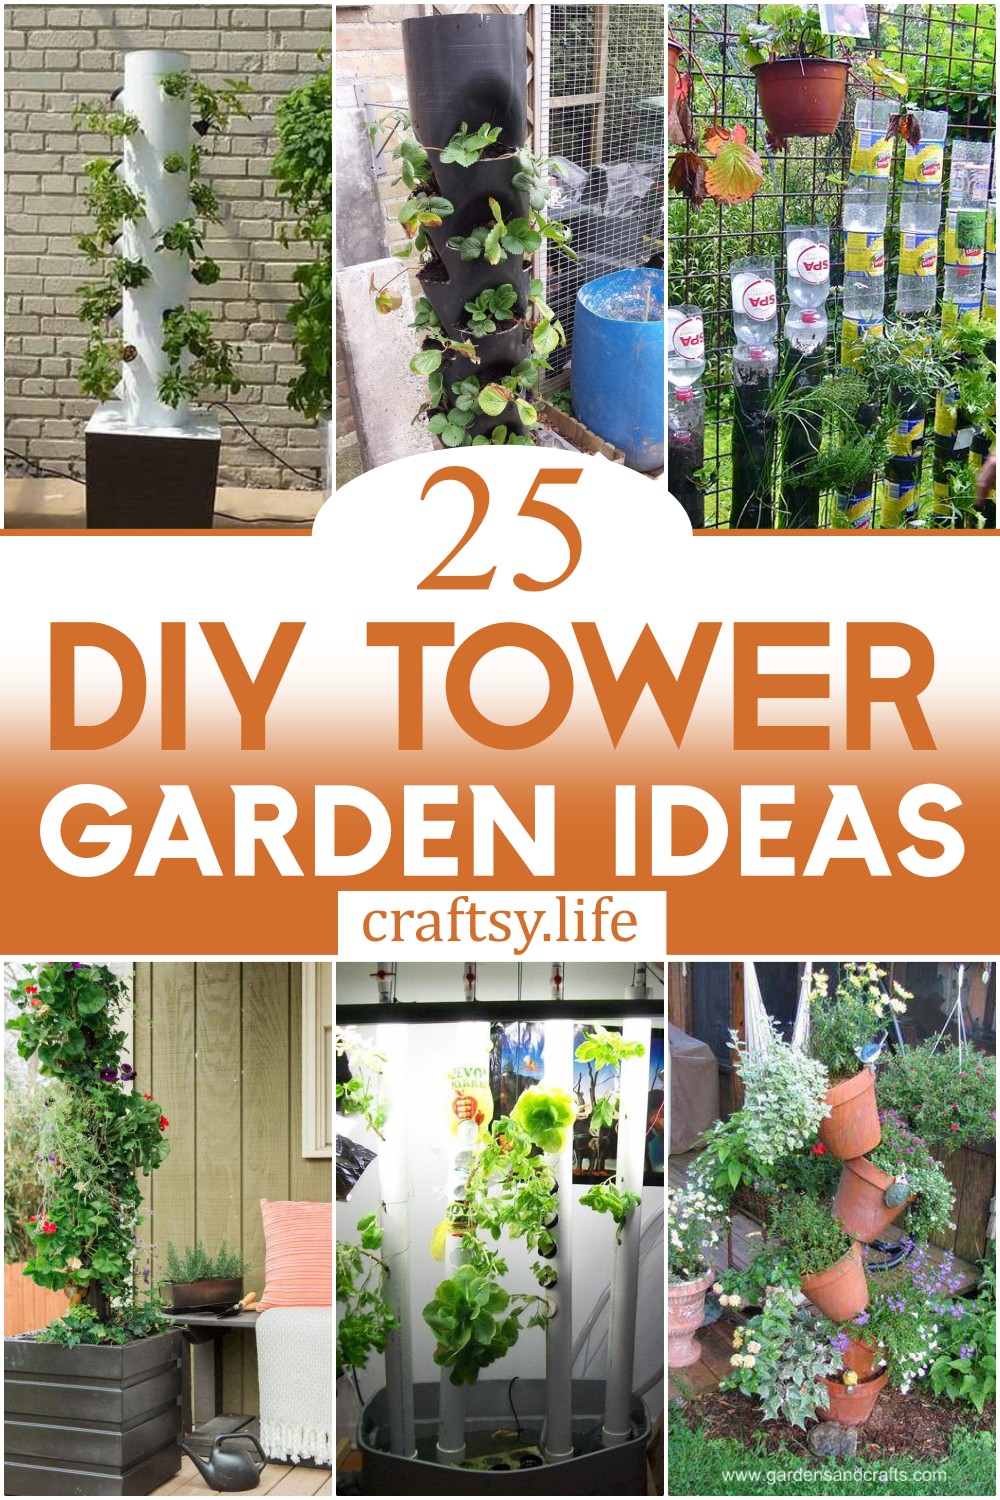 DIY Tower Garden Ideas 1